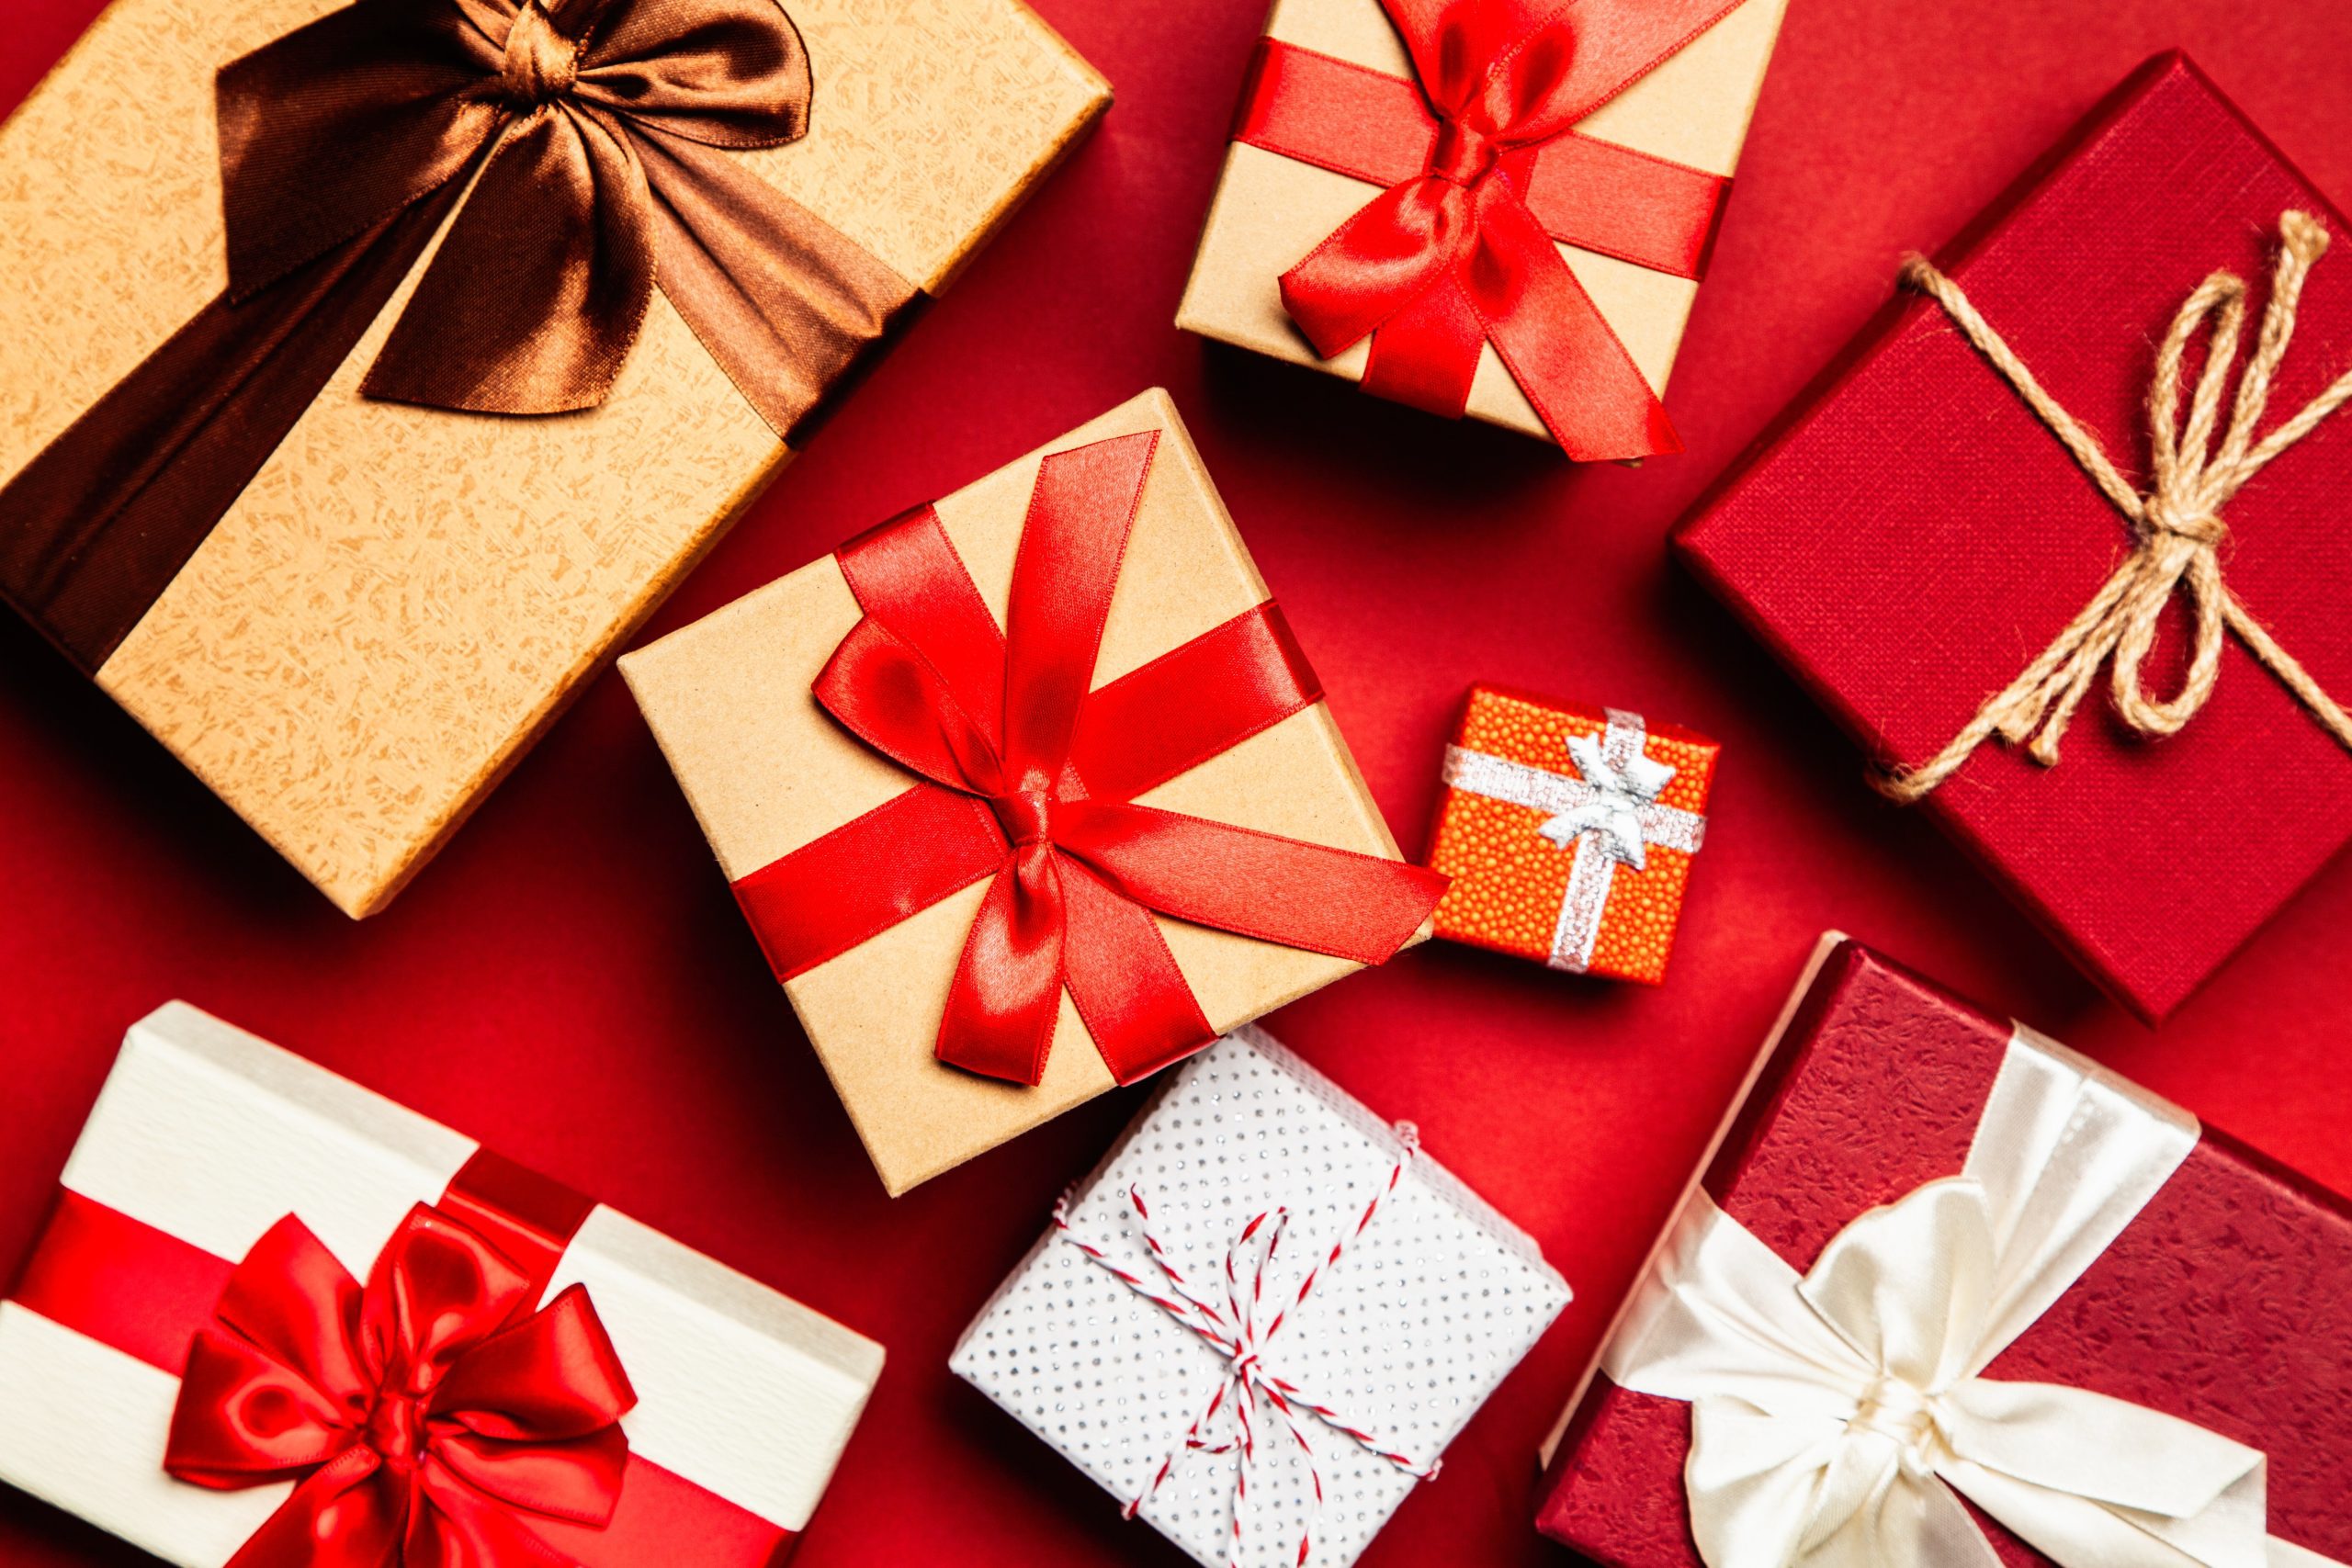 regalos-originales-navidad